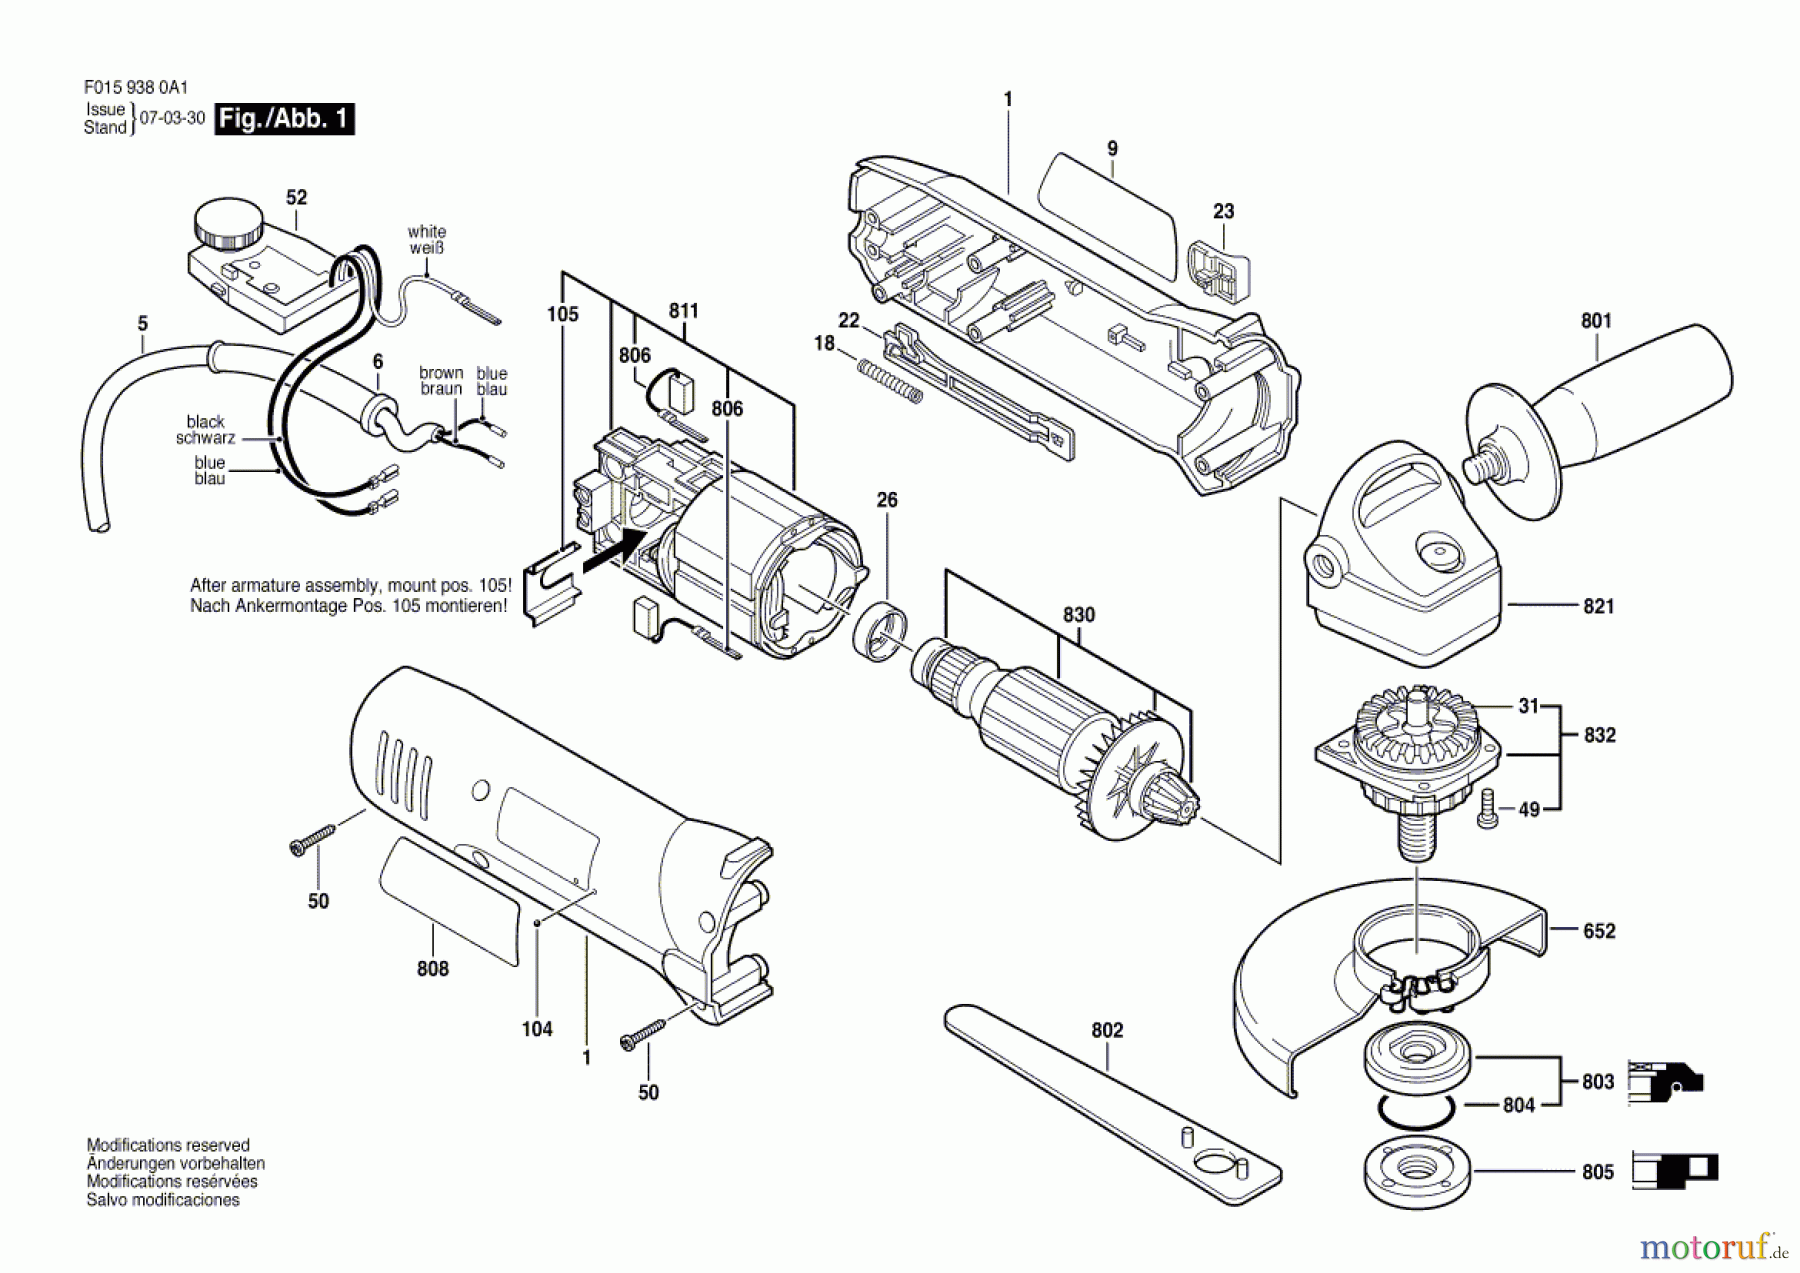  Bosch Werkzeug Winkelschleifer 9385 Seite 1